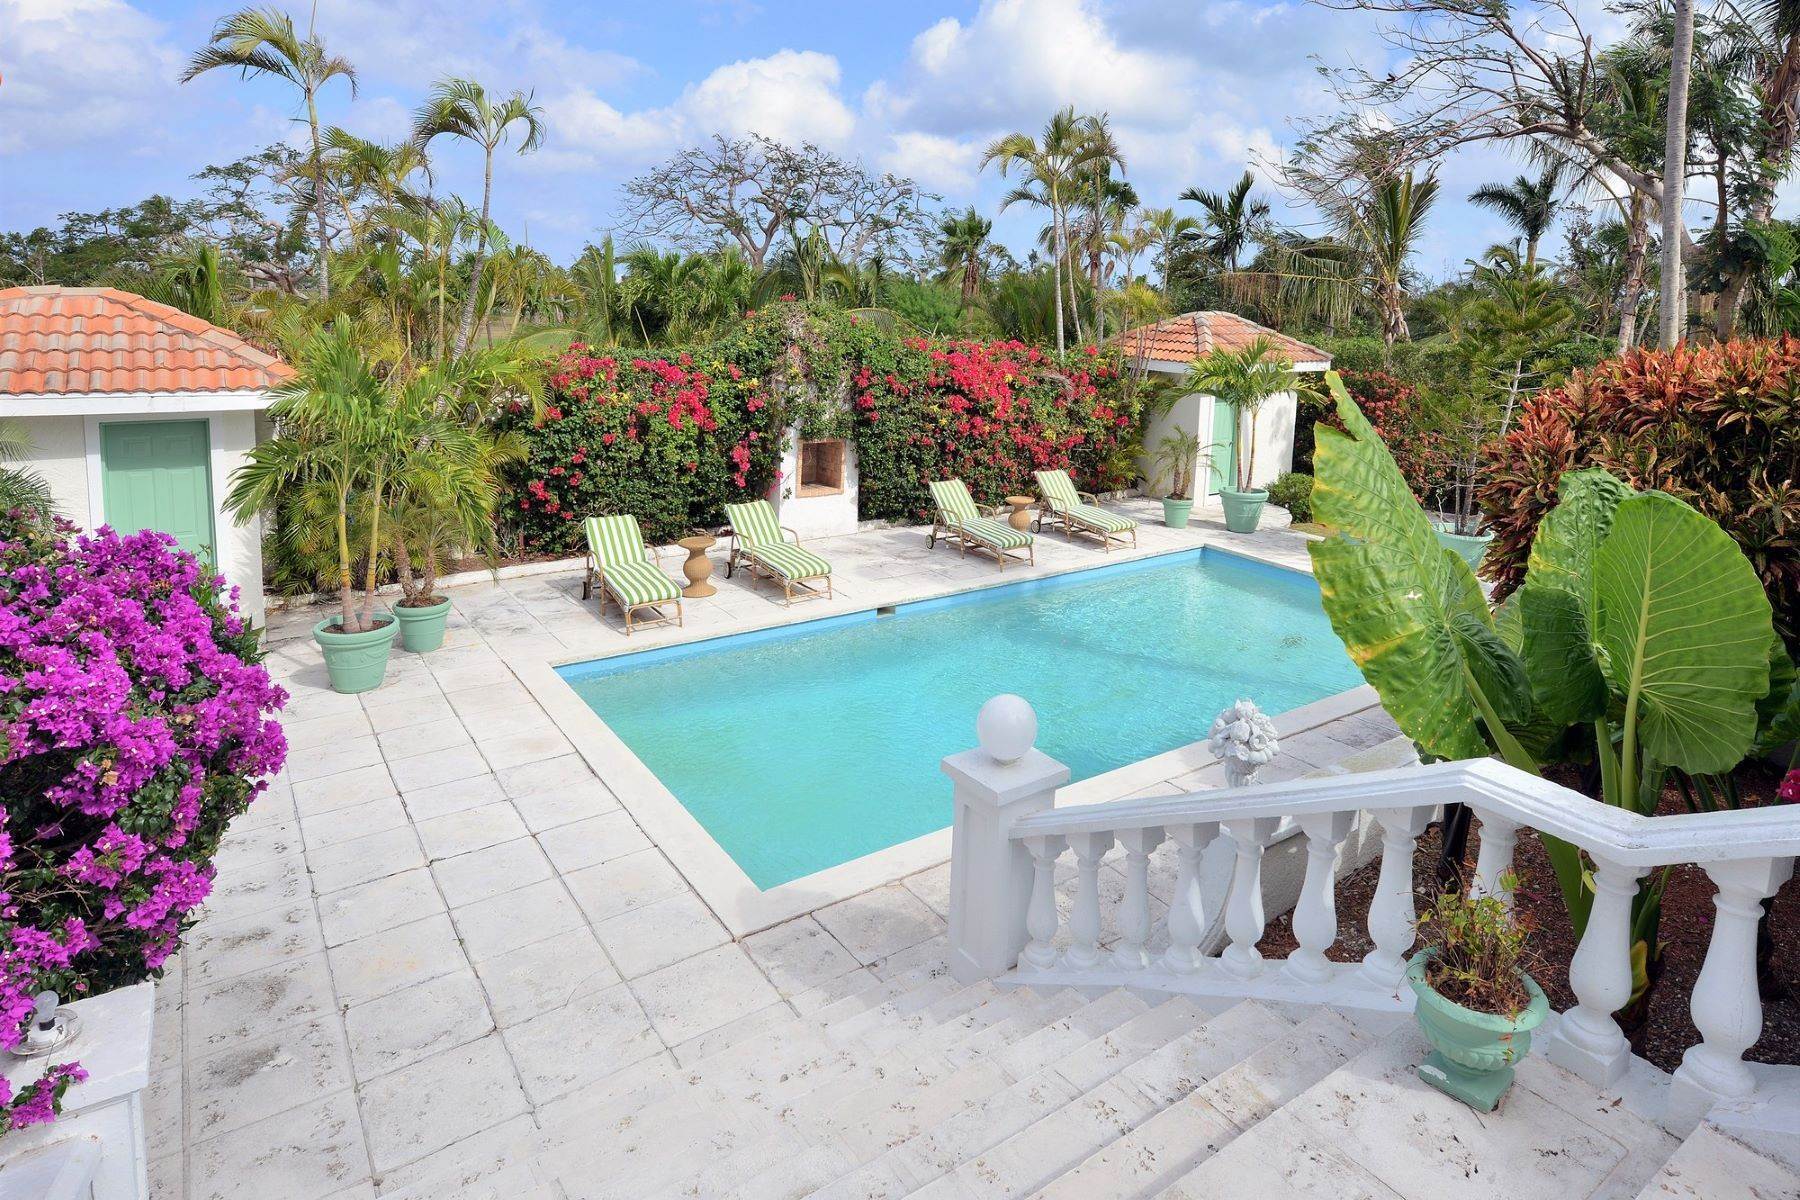 2. Vacation Rentals at Lyford Cay, Nassau and Paradise Island Bahamas